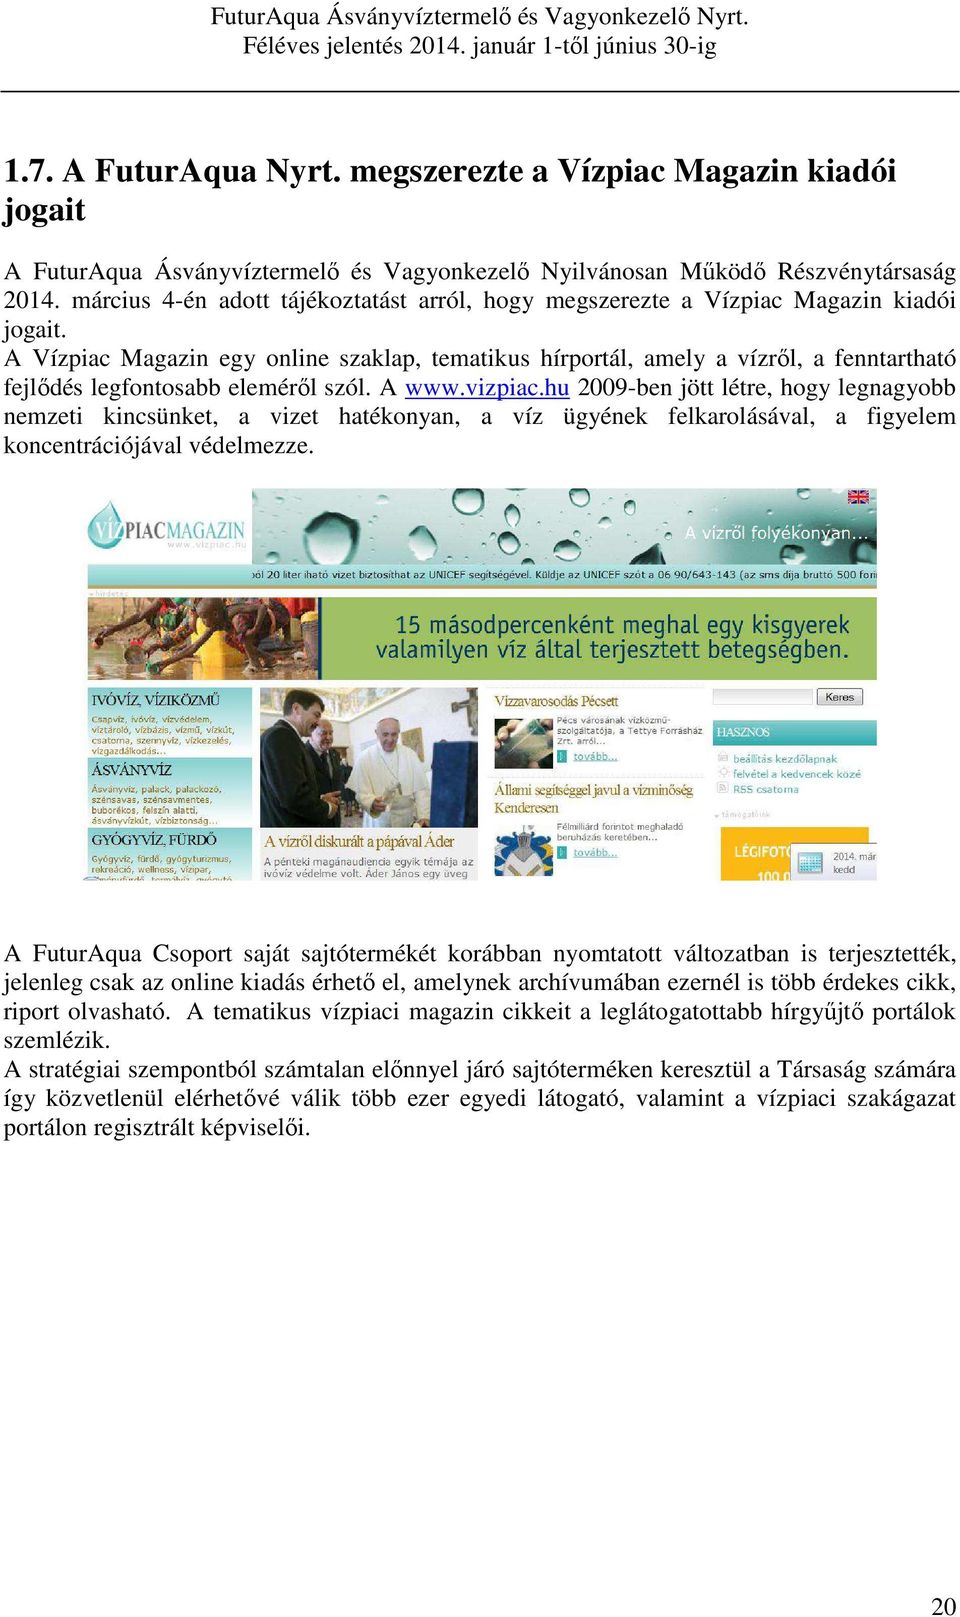 A Vízpiac Magazin egy online szaklap, tematikus hírportál, amely a vízről, a fenntartható fejlődés legfontosabb eleméről szól. A www.vizpiac.